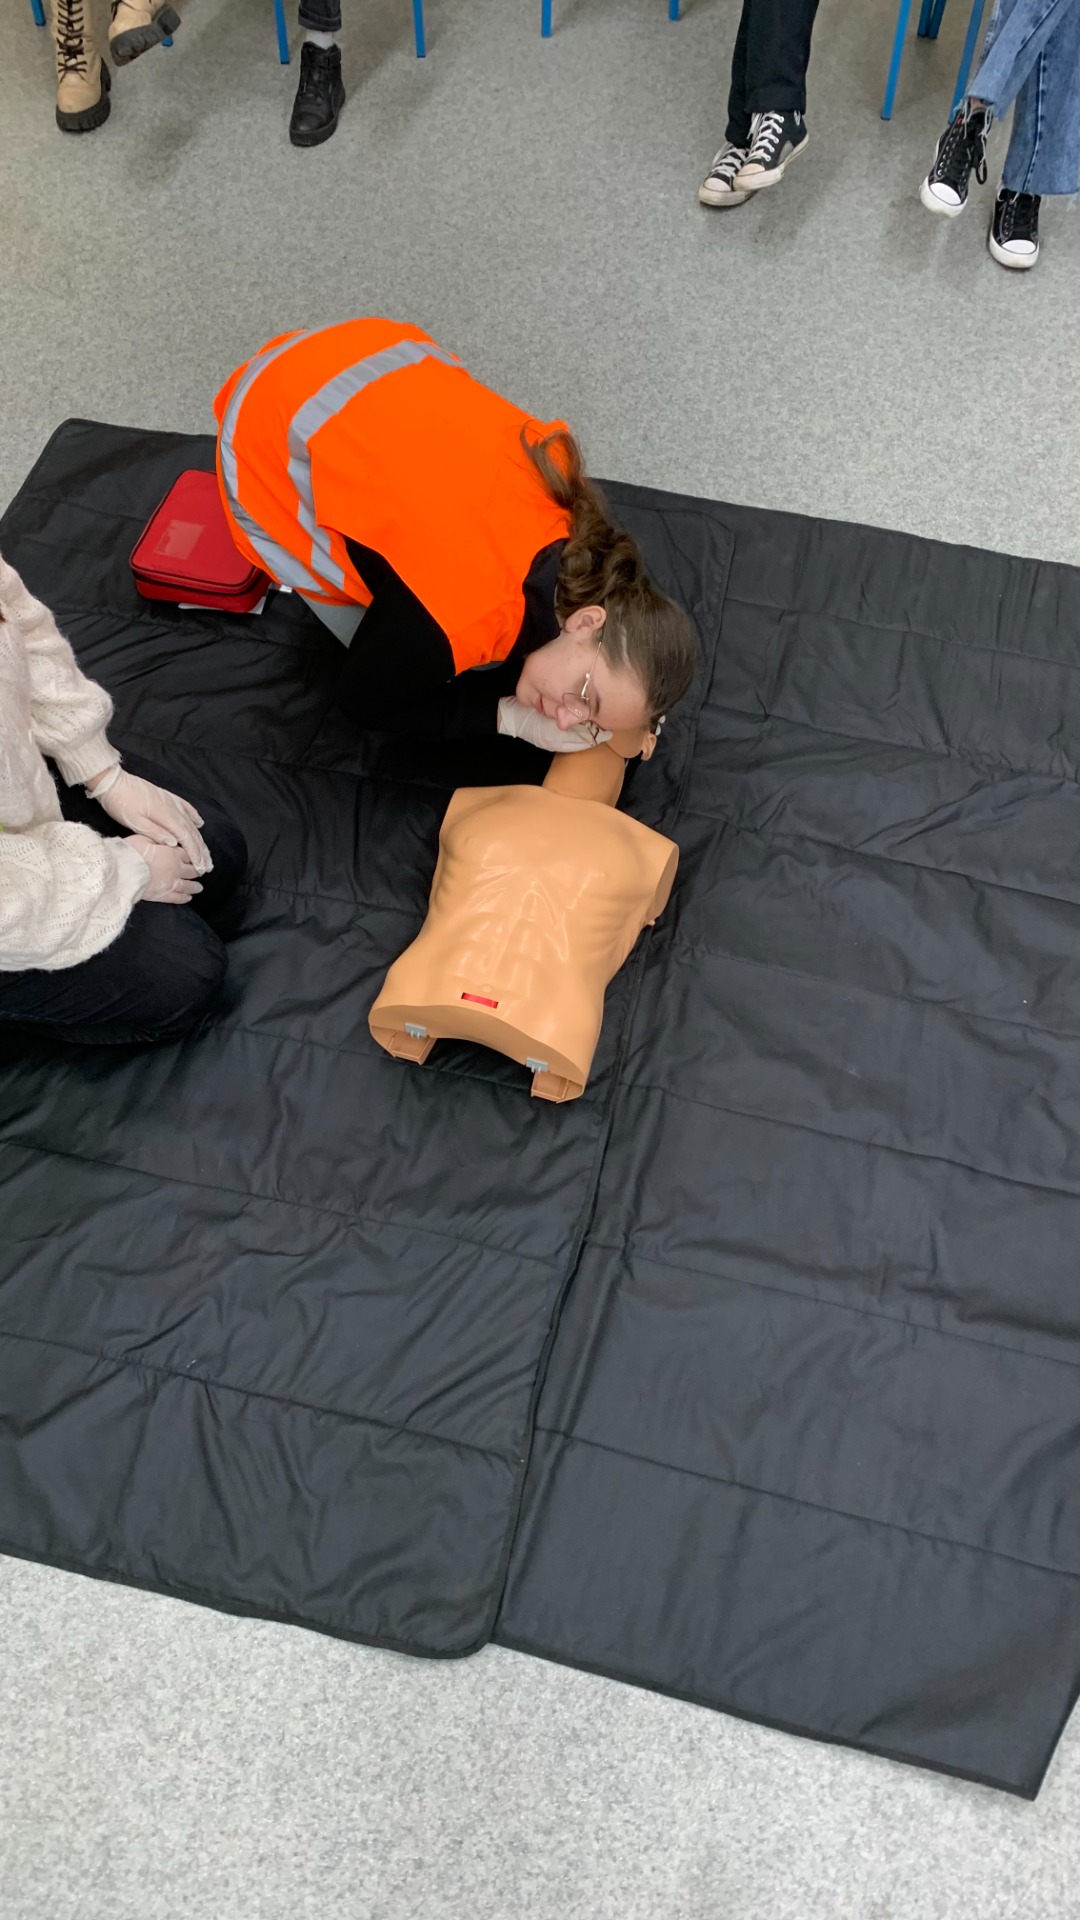 Uczniowie ćwiczą udzielanie pierwszej pomocy